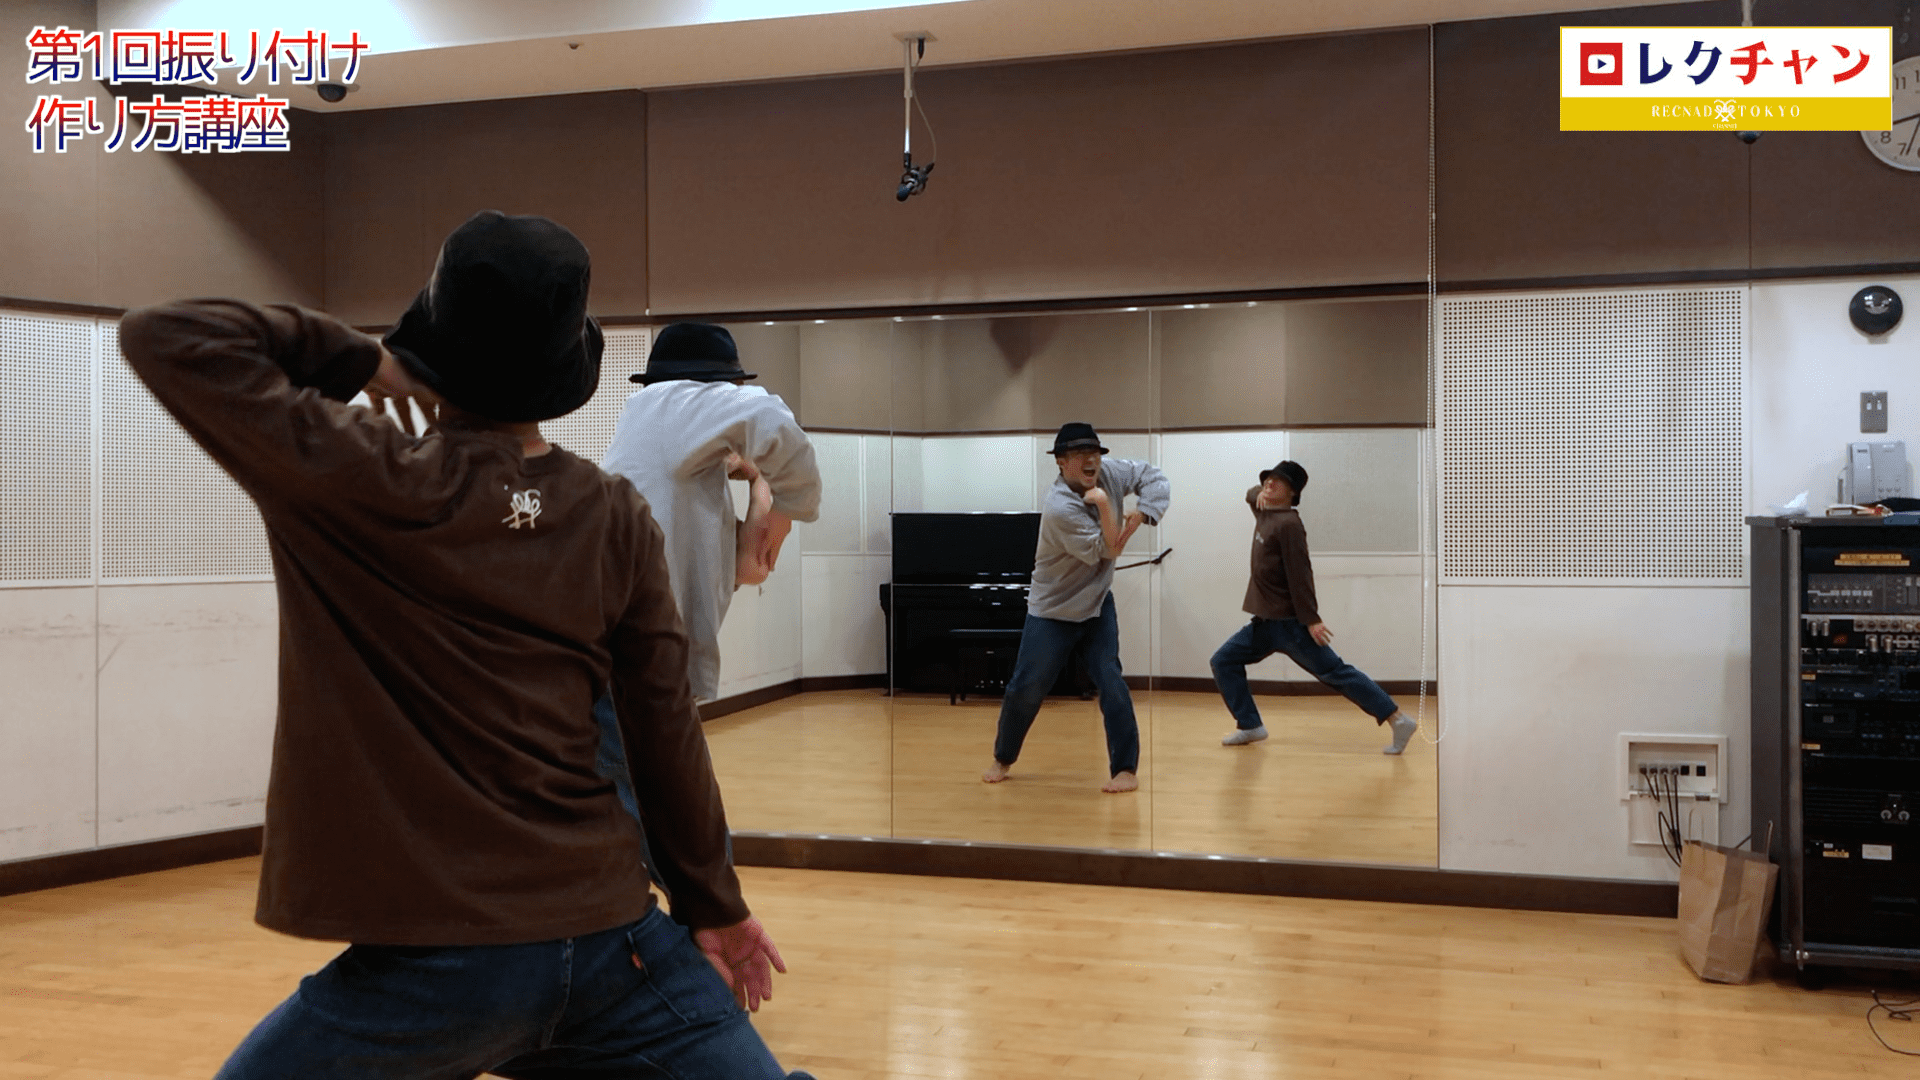 ダンスヴォーカル | 歌って踊る ダンス 振り付け 作り方 考え方 講座 ダンサー YUSUKE